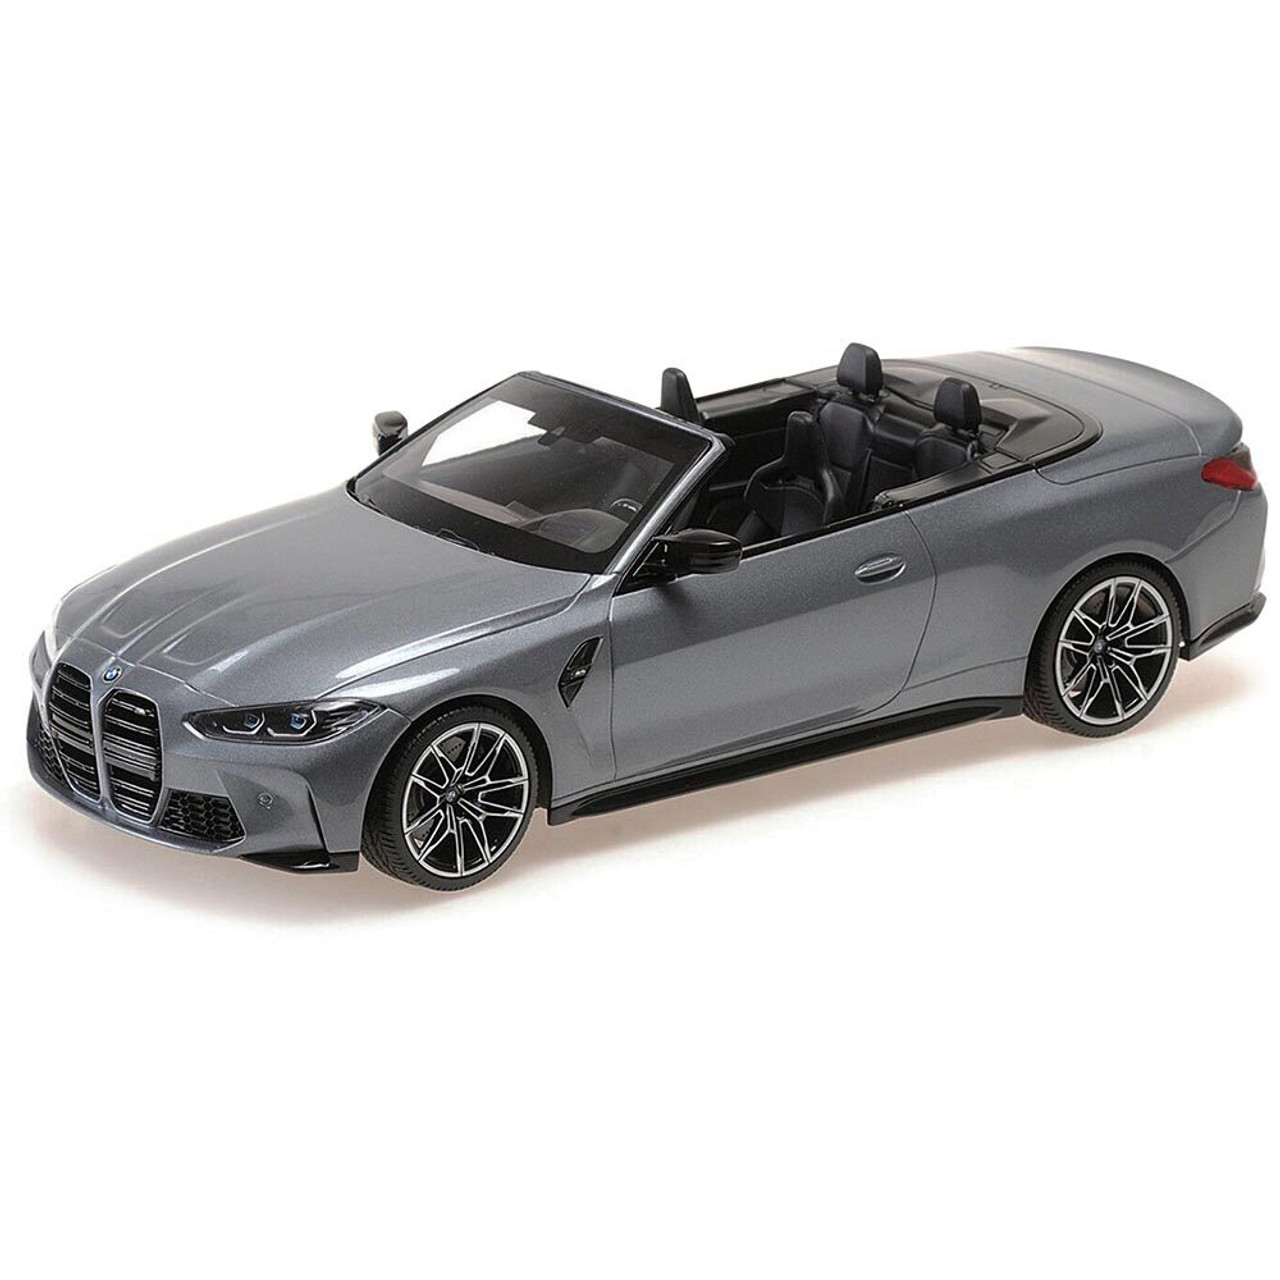 2021 BMW M4 Cabriolet - Grey Metallic - Ltd. Ed. 402Pcs 1:18 Scale Diecast  Model Car